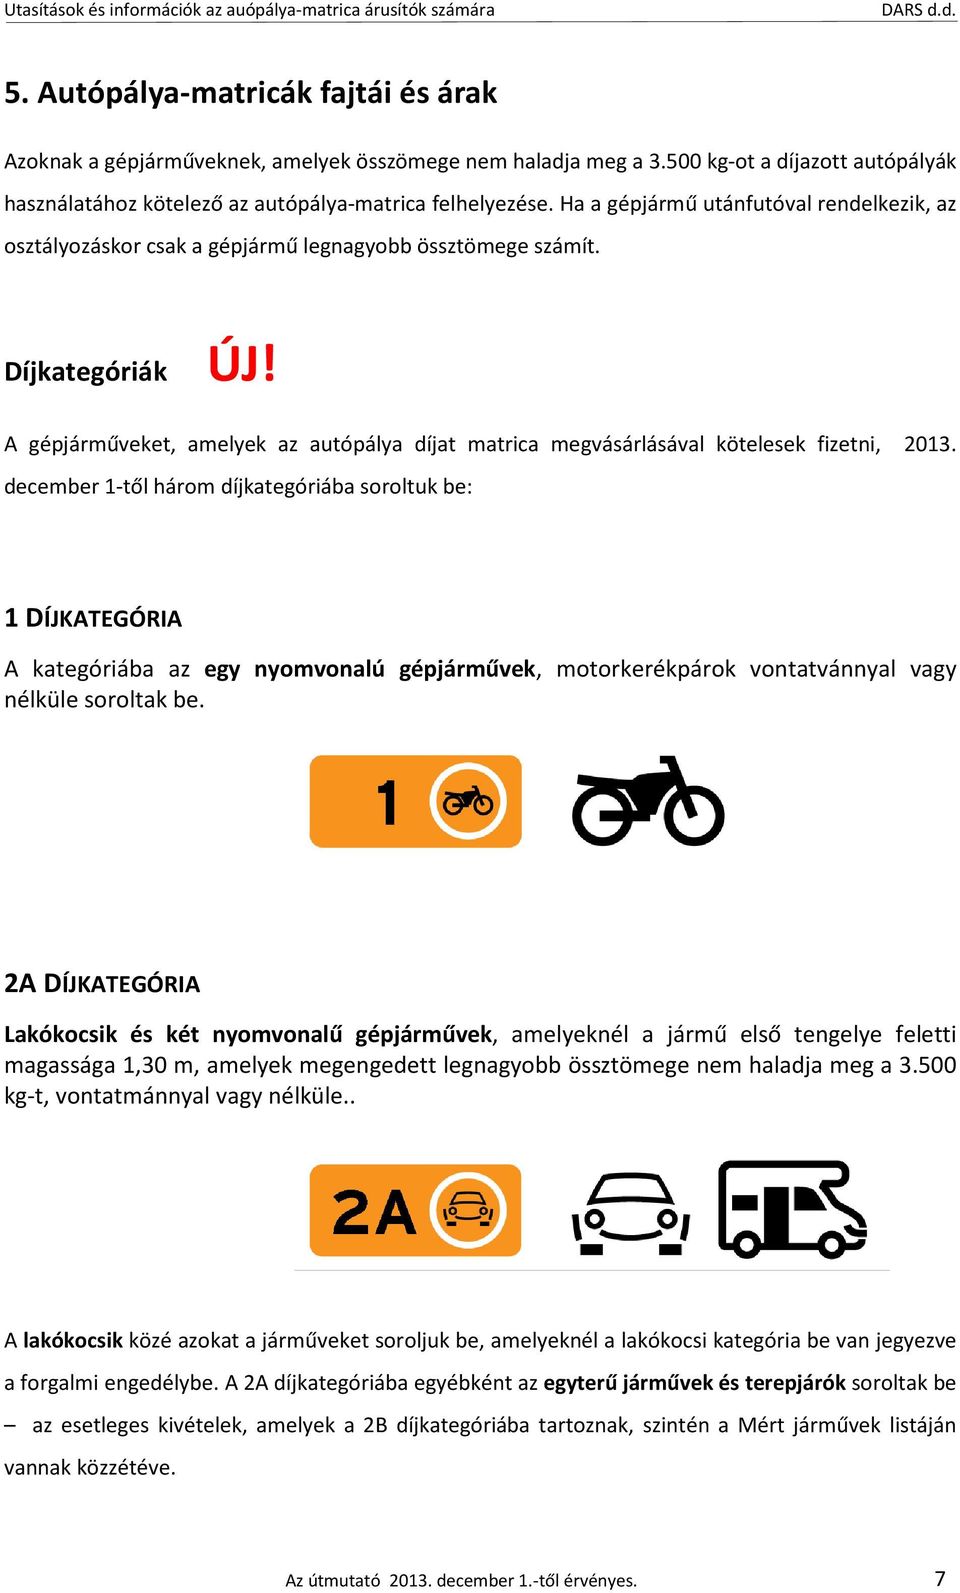 A gépjárműveket, amelyek az autópálya díjat matrica megvásárlásával kötelesek fizetni, 2013.